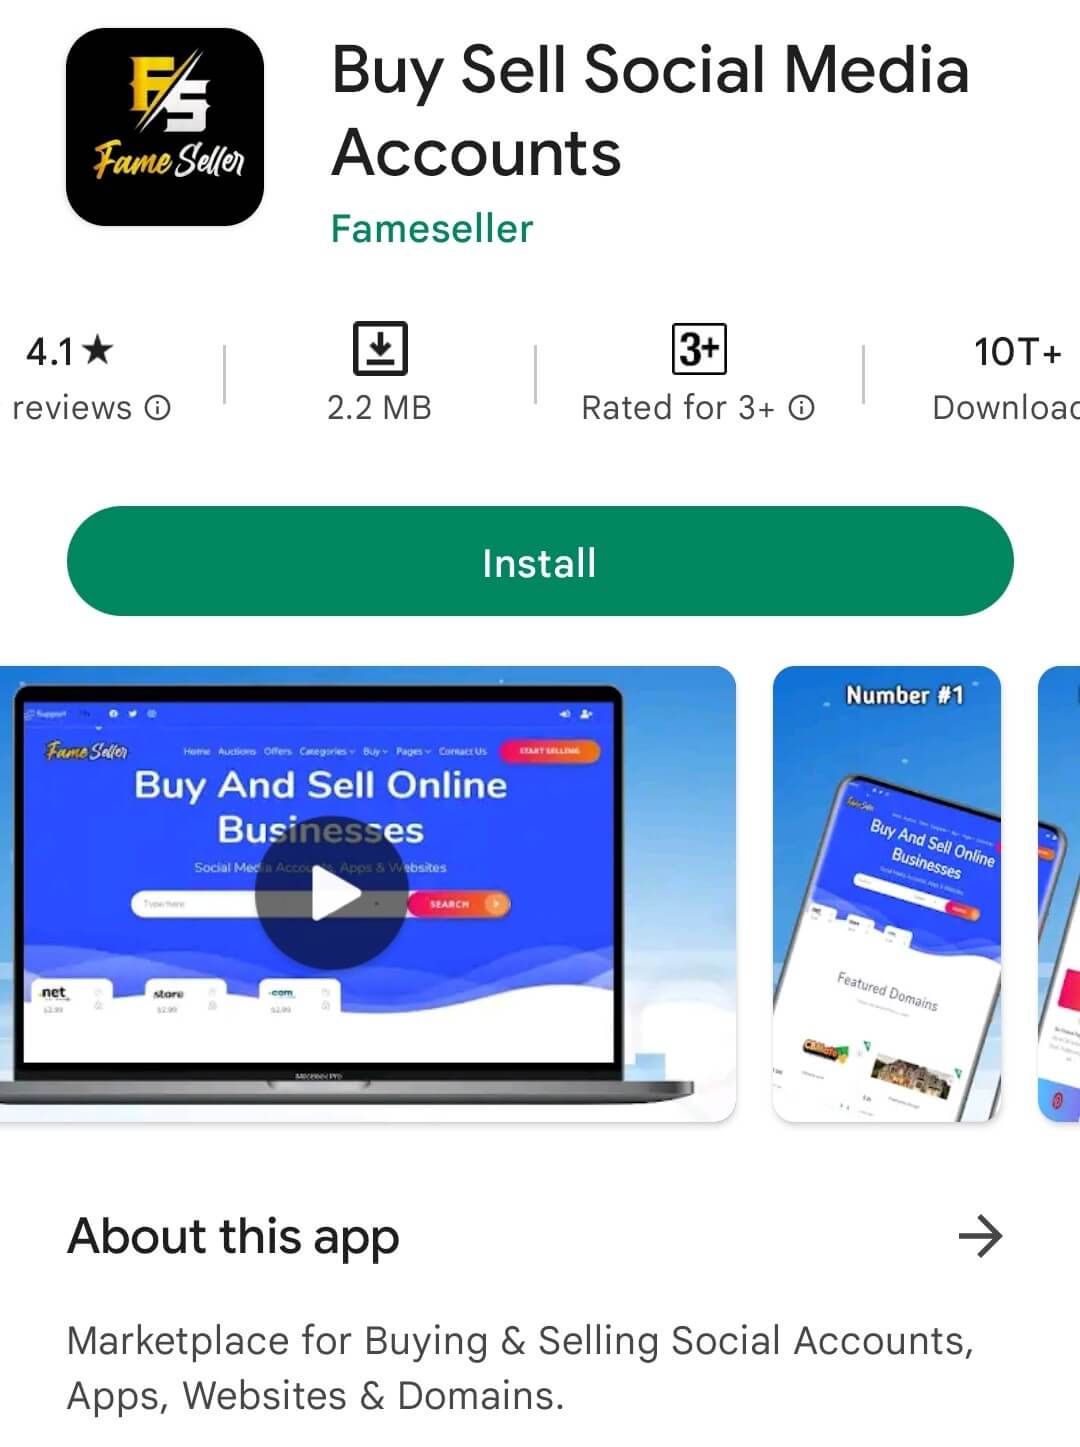 fameseller app